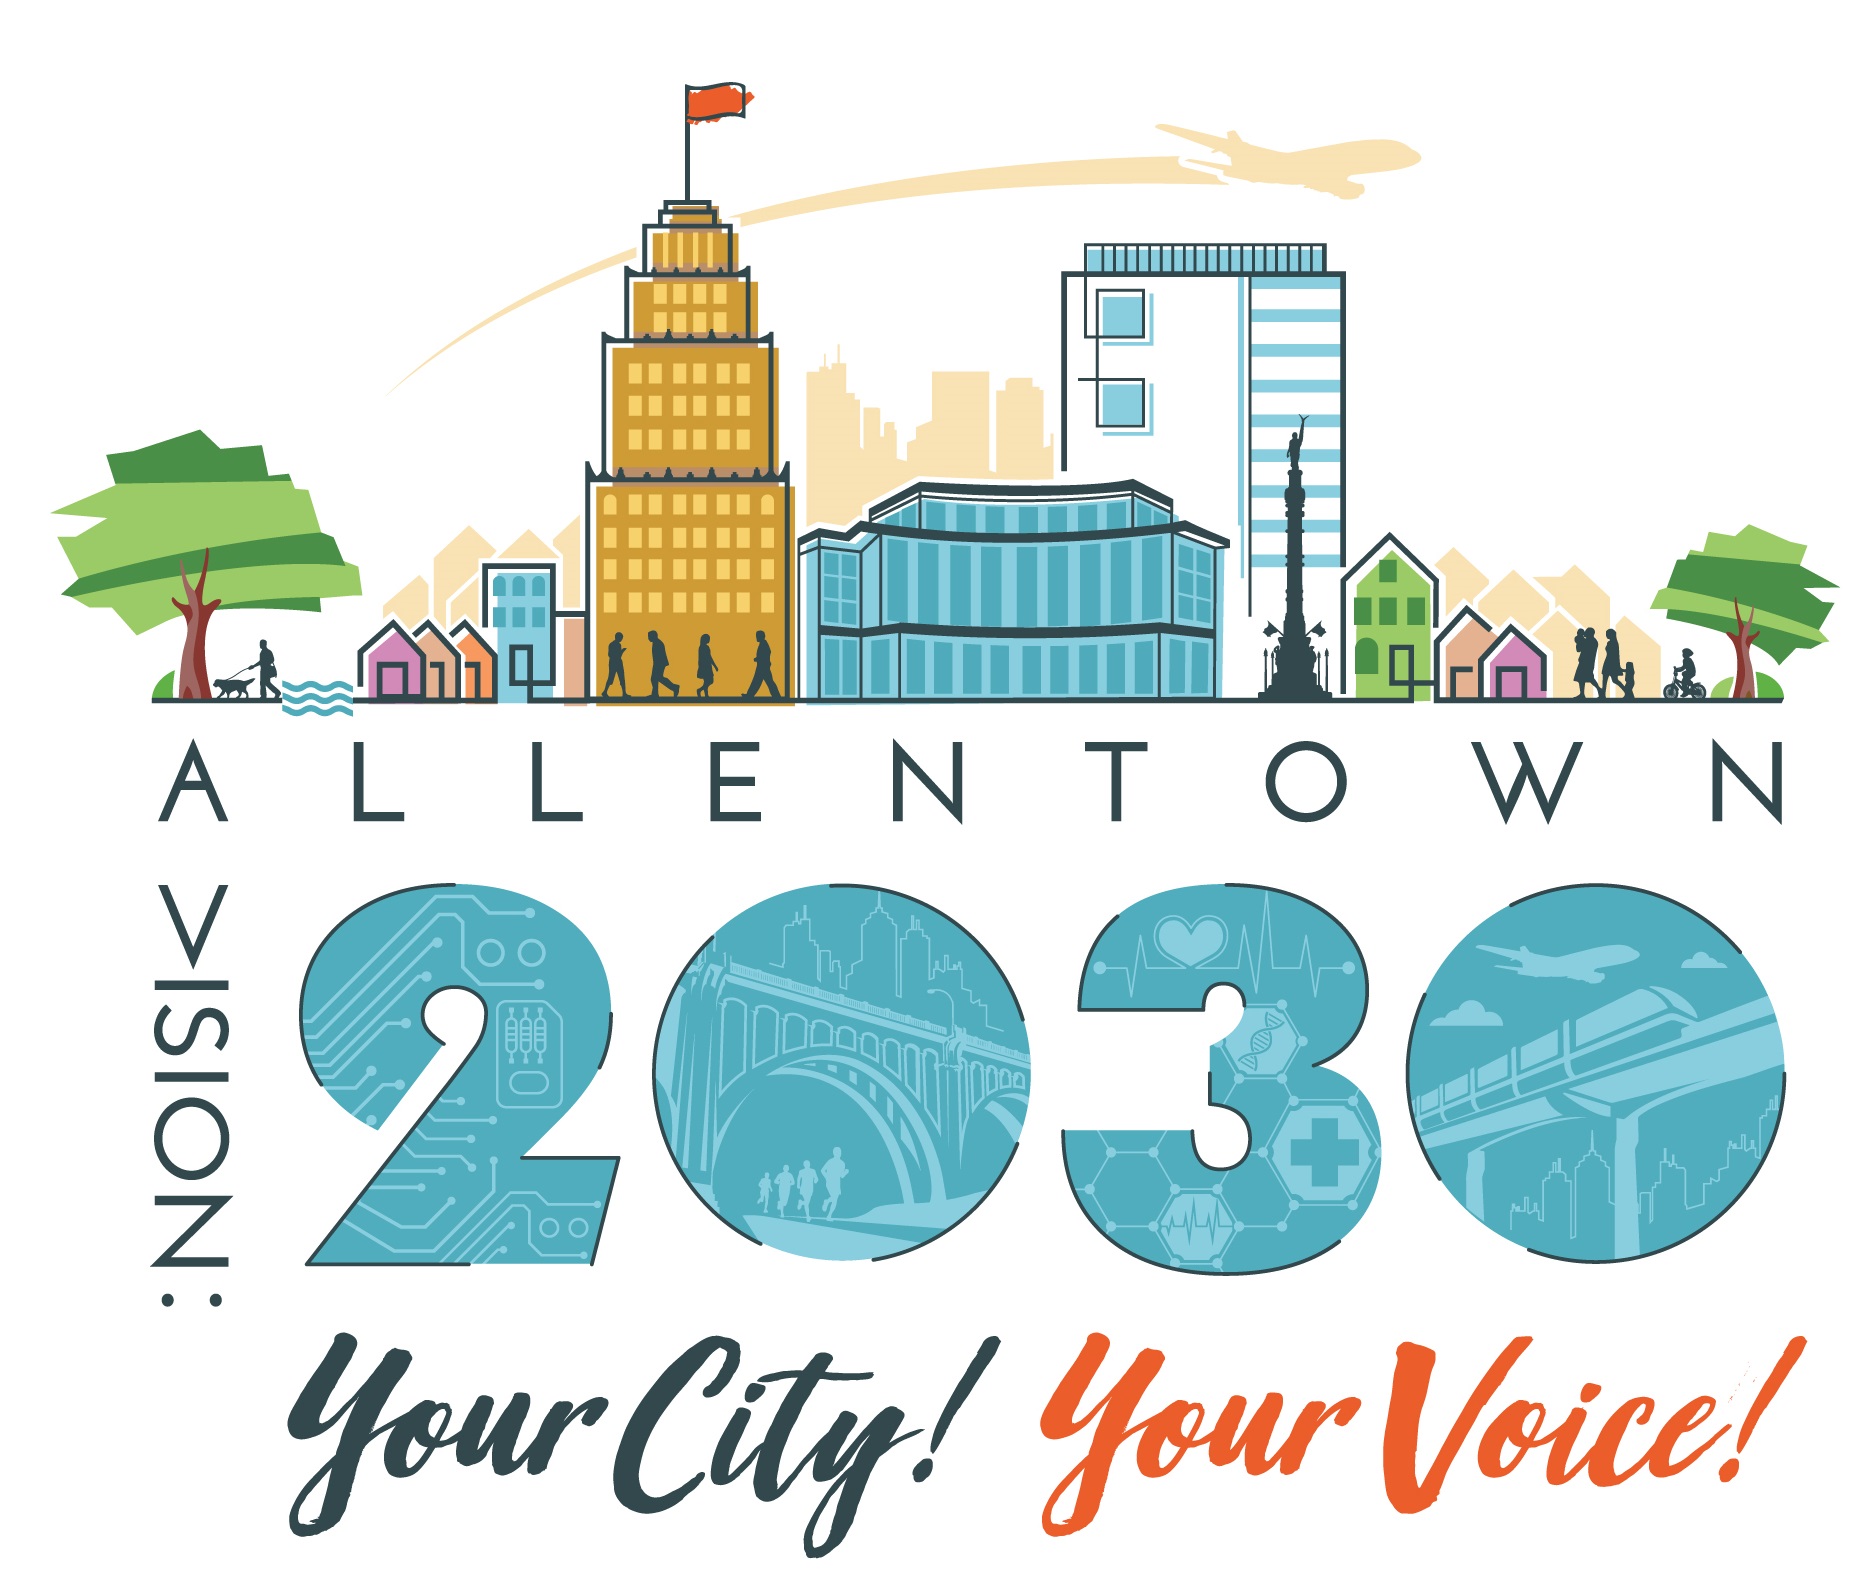 Allentown Vision 2030 logo